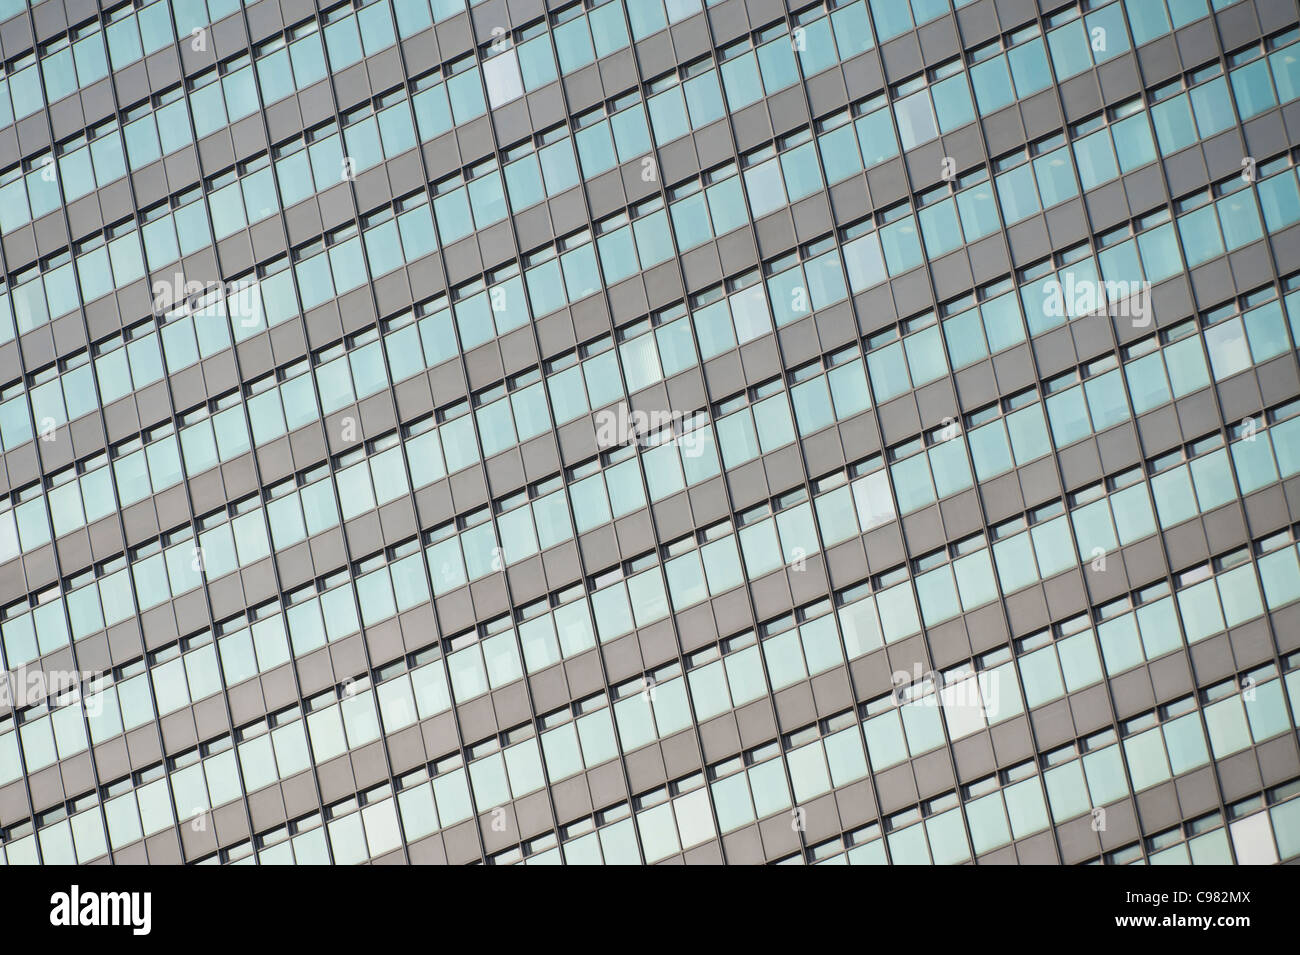 Un gros plan du profil de windows City Tower, Manchester Piccadilly. Banque D'Images